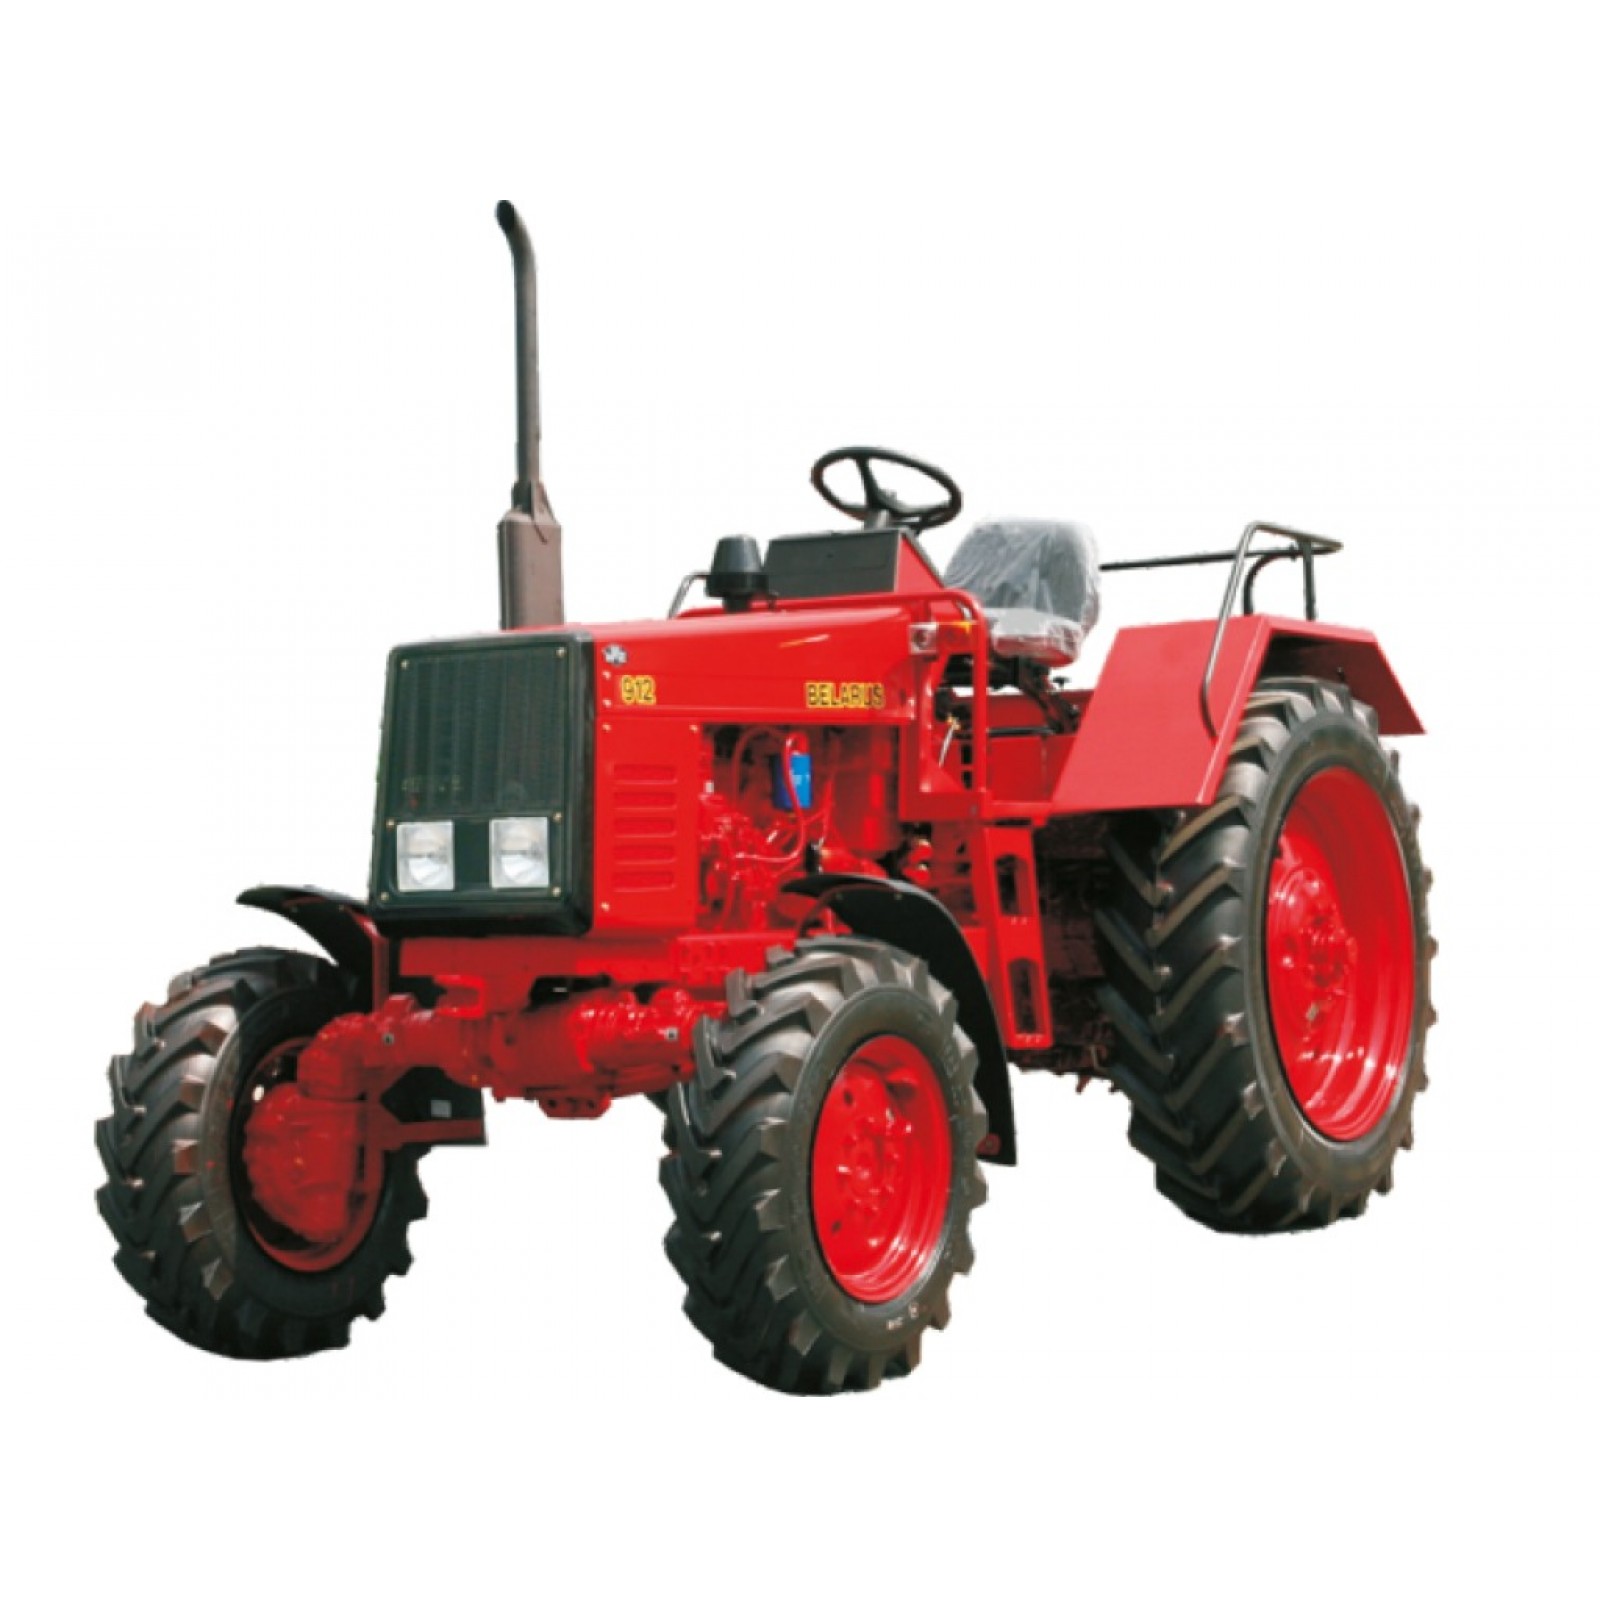 Тракторы BELARUS-811-812